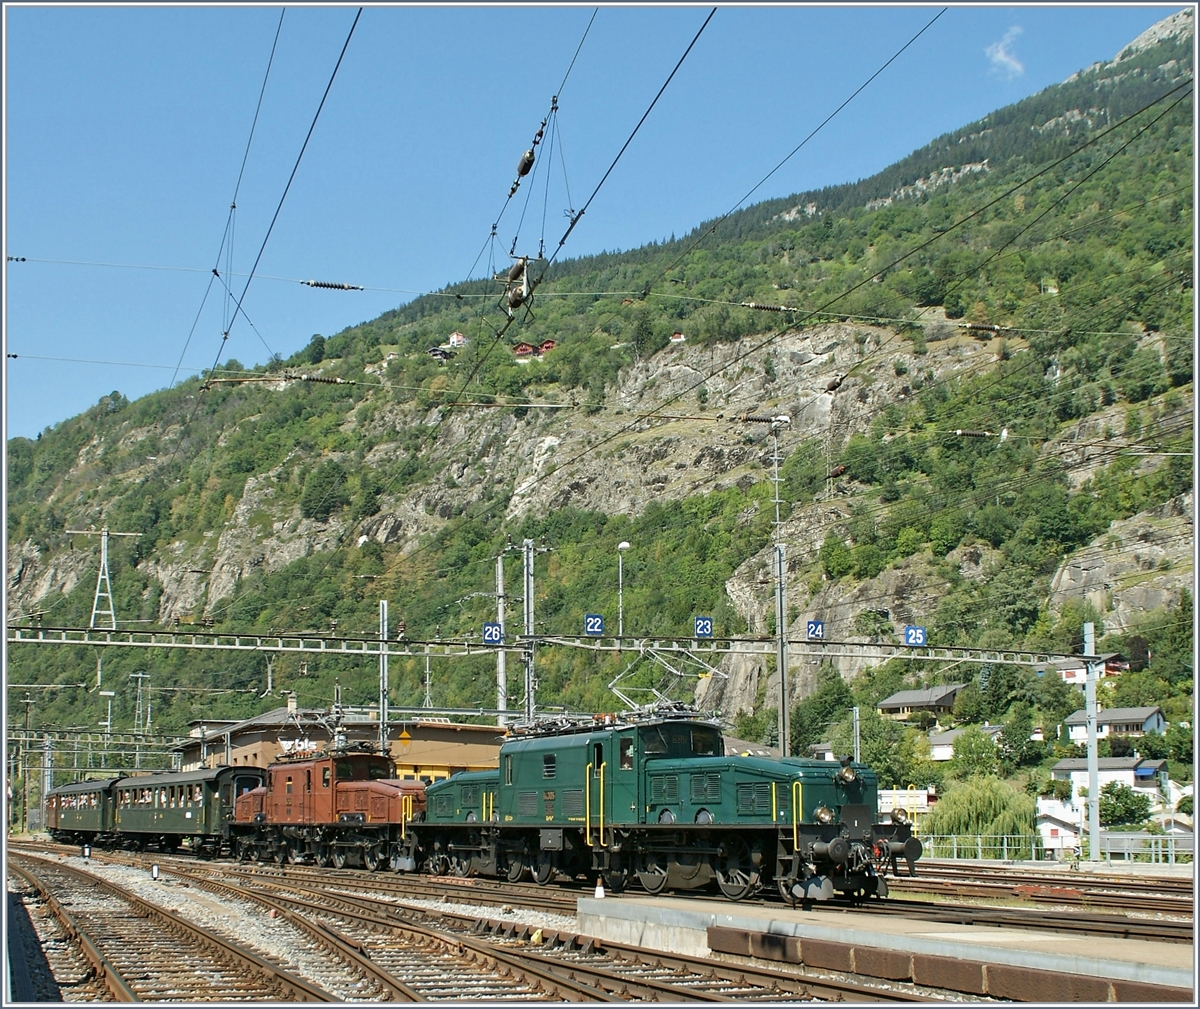 Die beiden Krokodils Ce 6/8 III 14305 (Baujahr 1925 - UIC 91 85 4601 305-6) und Ce 6/8 II 14253 (Baujahr 1919 - UIC 91 85 4601 253-8) erreichen mit ihrem historischen Schnellzug 1930 von Bern nach Domodossola den Bahnhof Brig.

20. August 2011